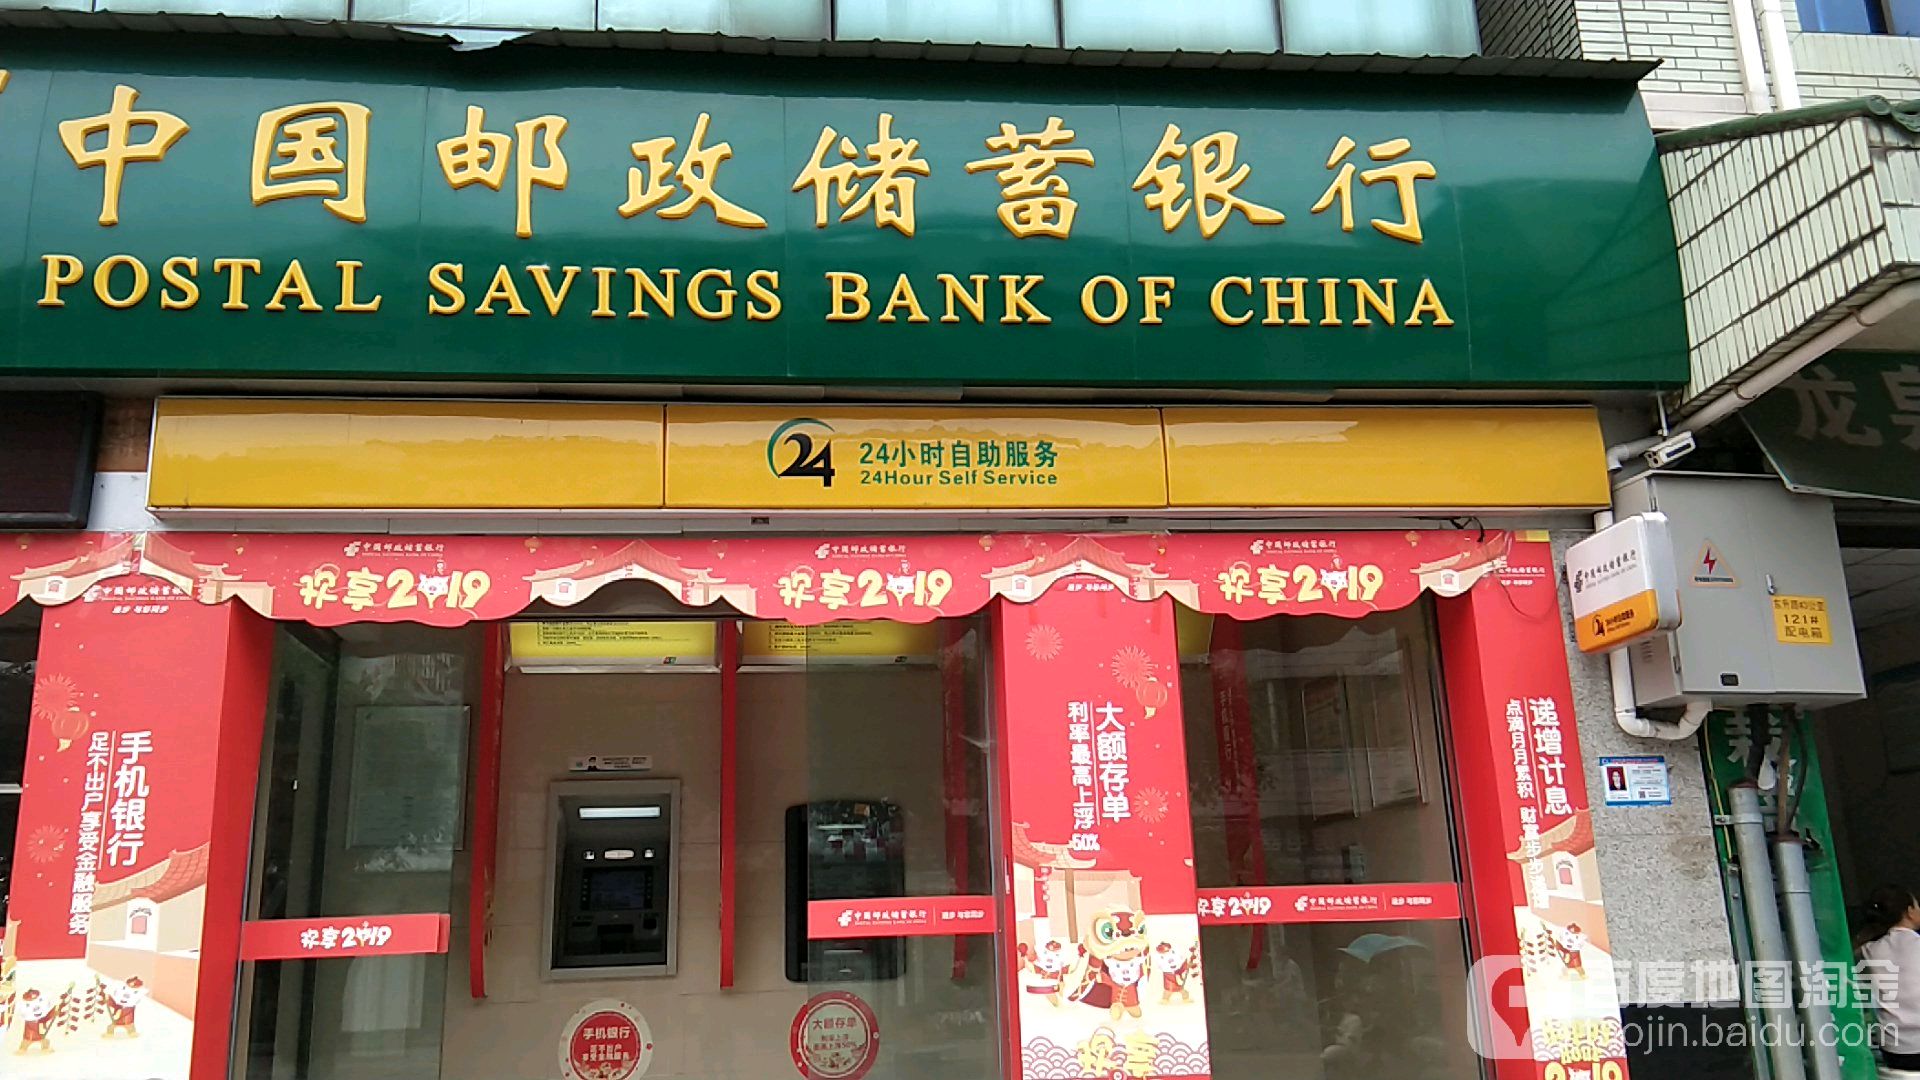 中国邮政储蓄银行24小时自助银行服务(人民路)